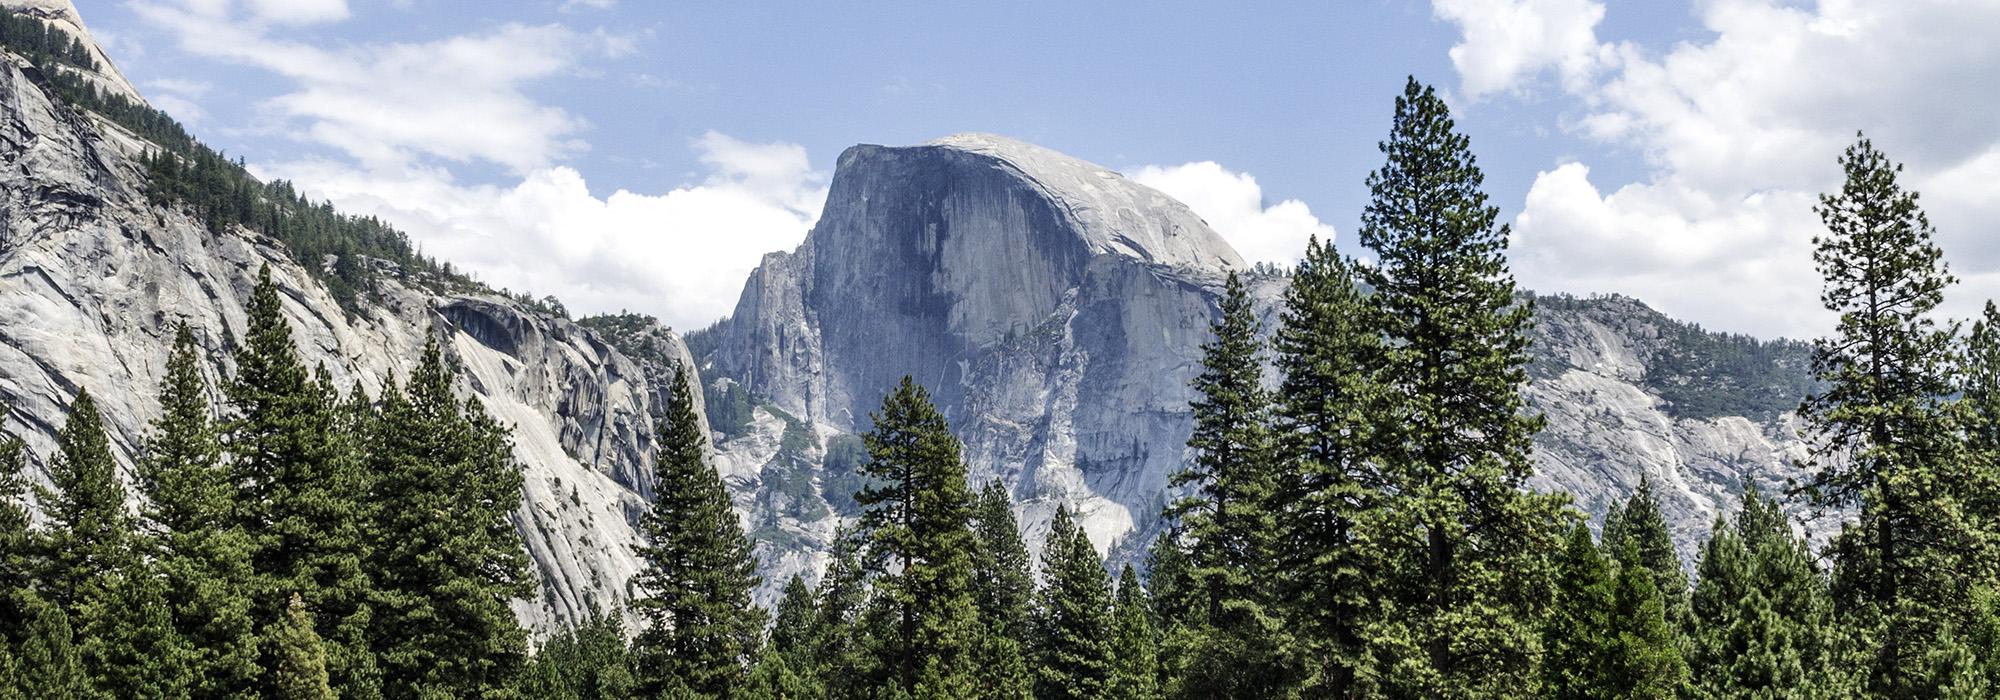 CA_Yosemite_YosemiteNationalPark_courtesyWikimediaCommons_2015_001_Hero.jpg